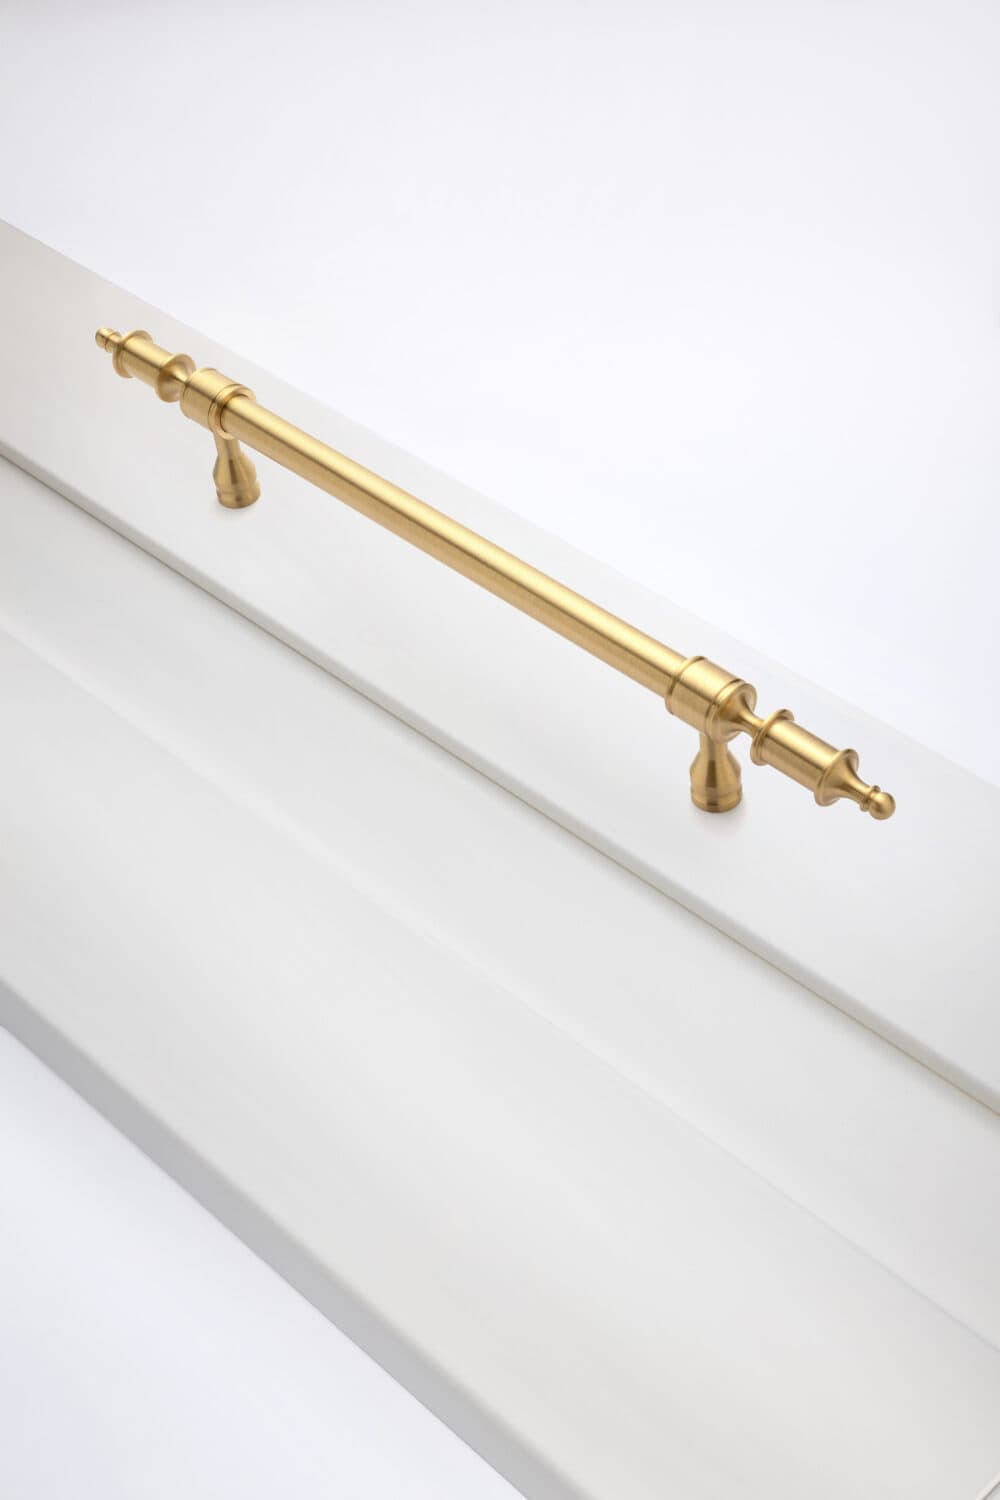 Vito brass cabinet handle